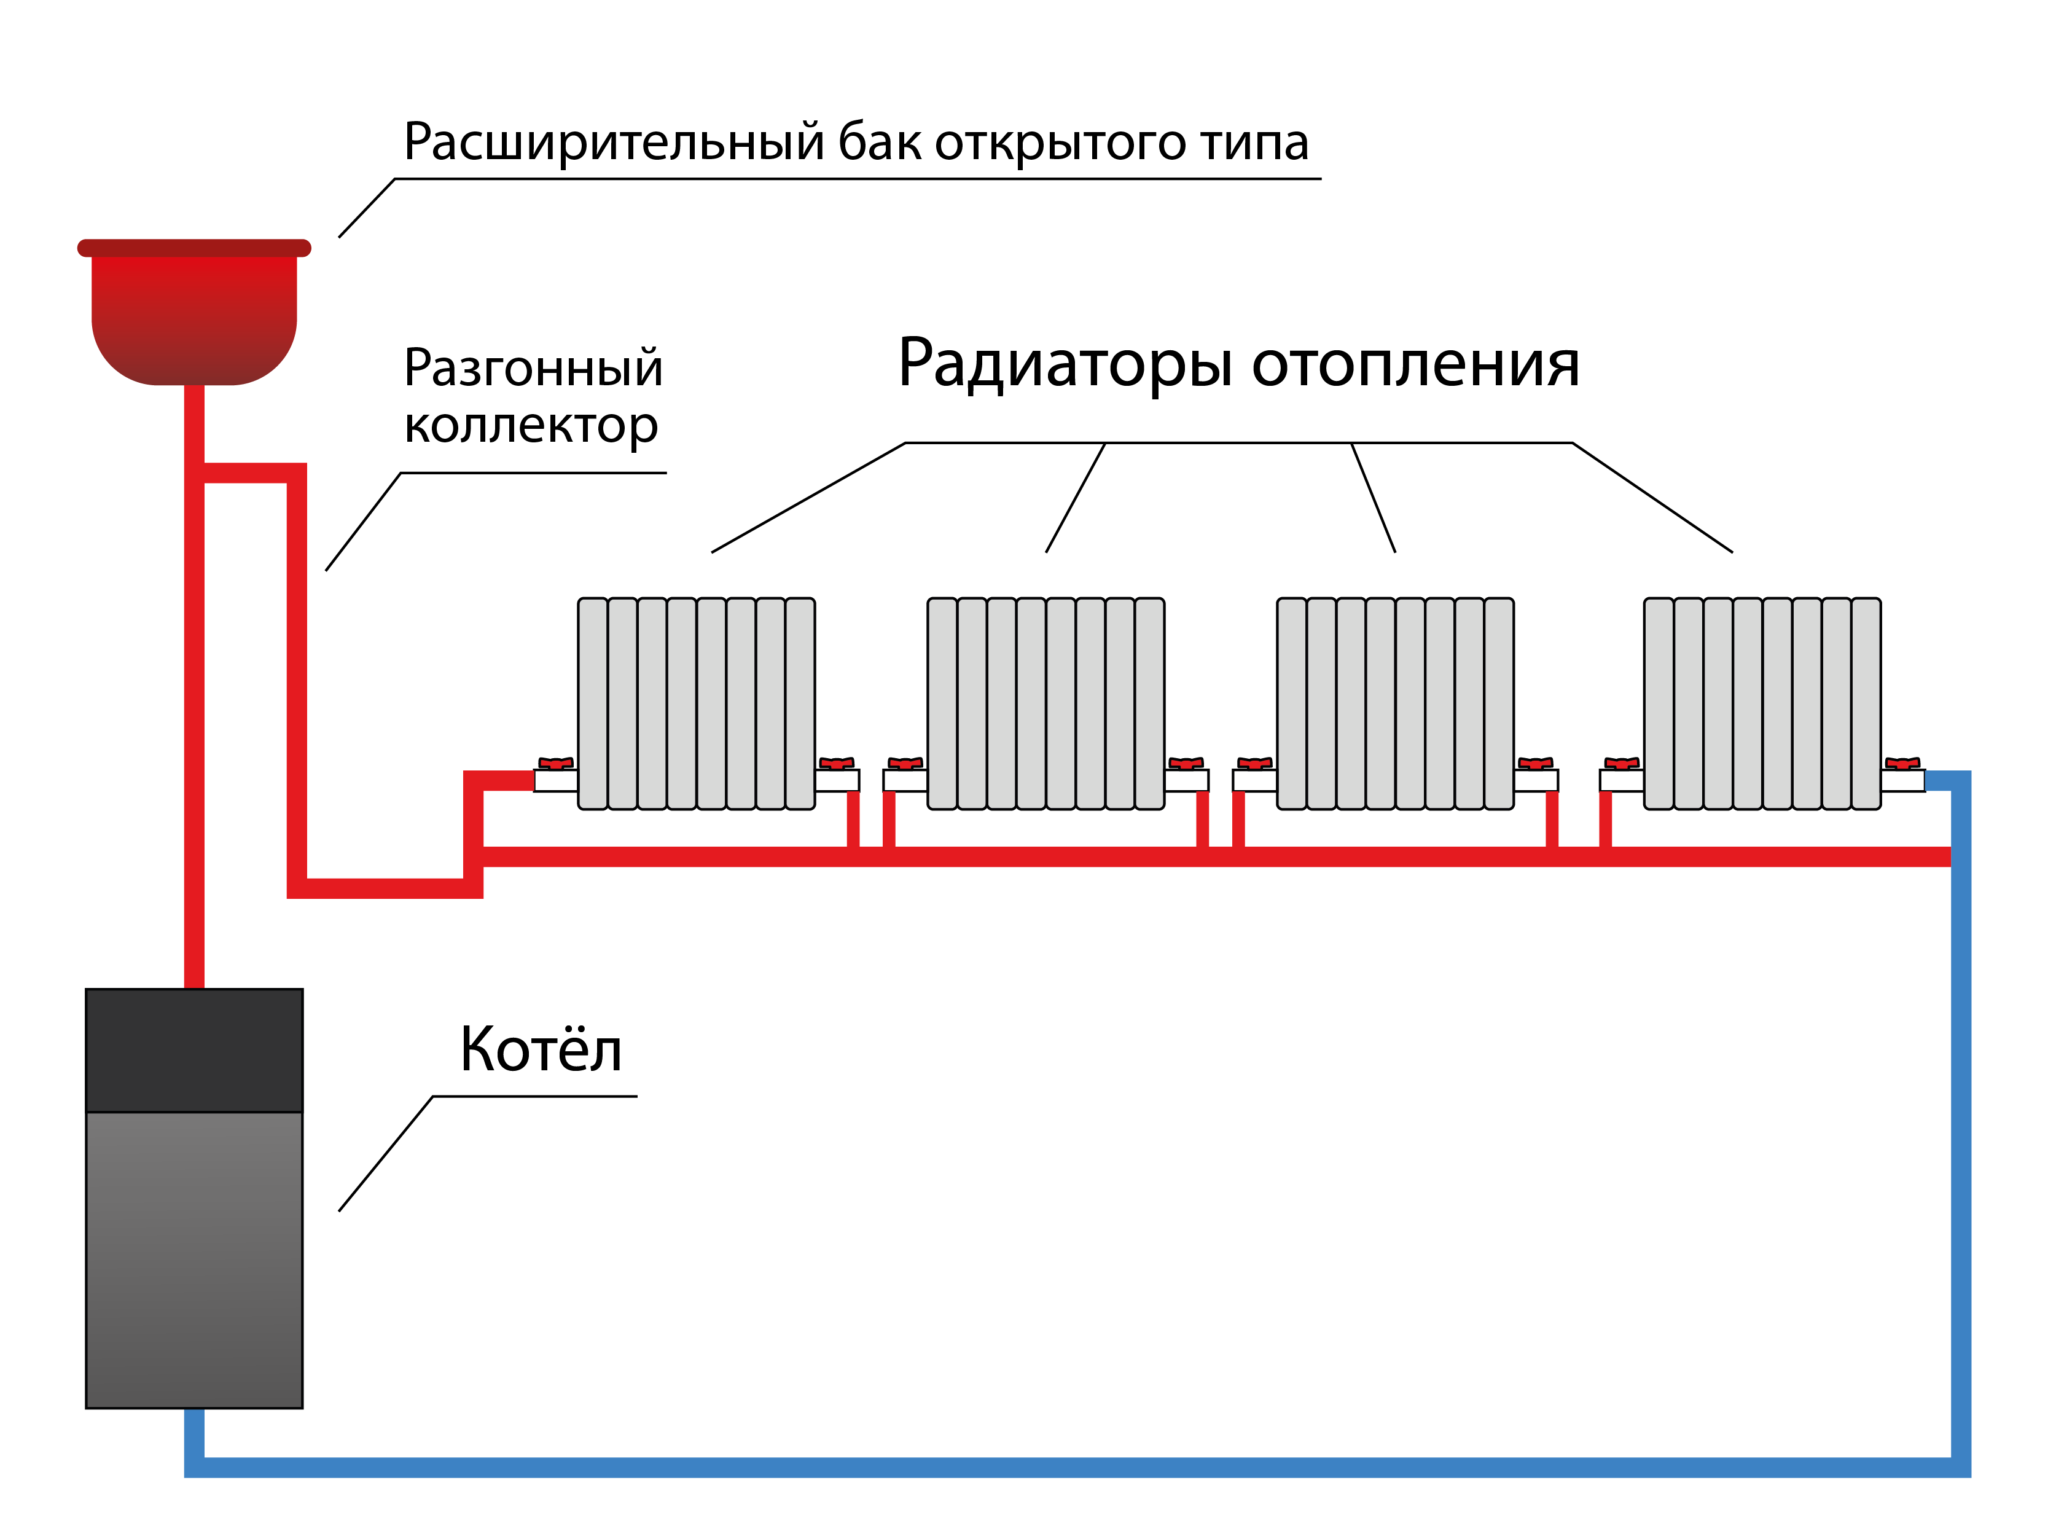 Отопление с естественной циркуляцией: ключевые элементы системы и особенности ее проектирования (85 фото) — строительный портал — strojka-gid.ru